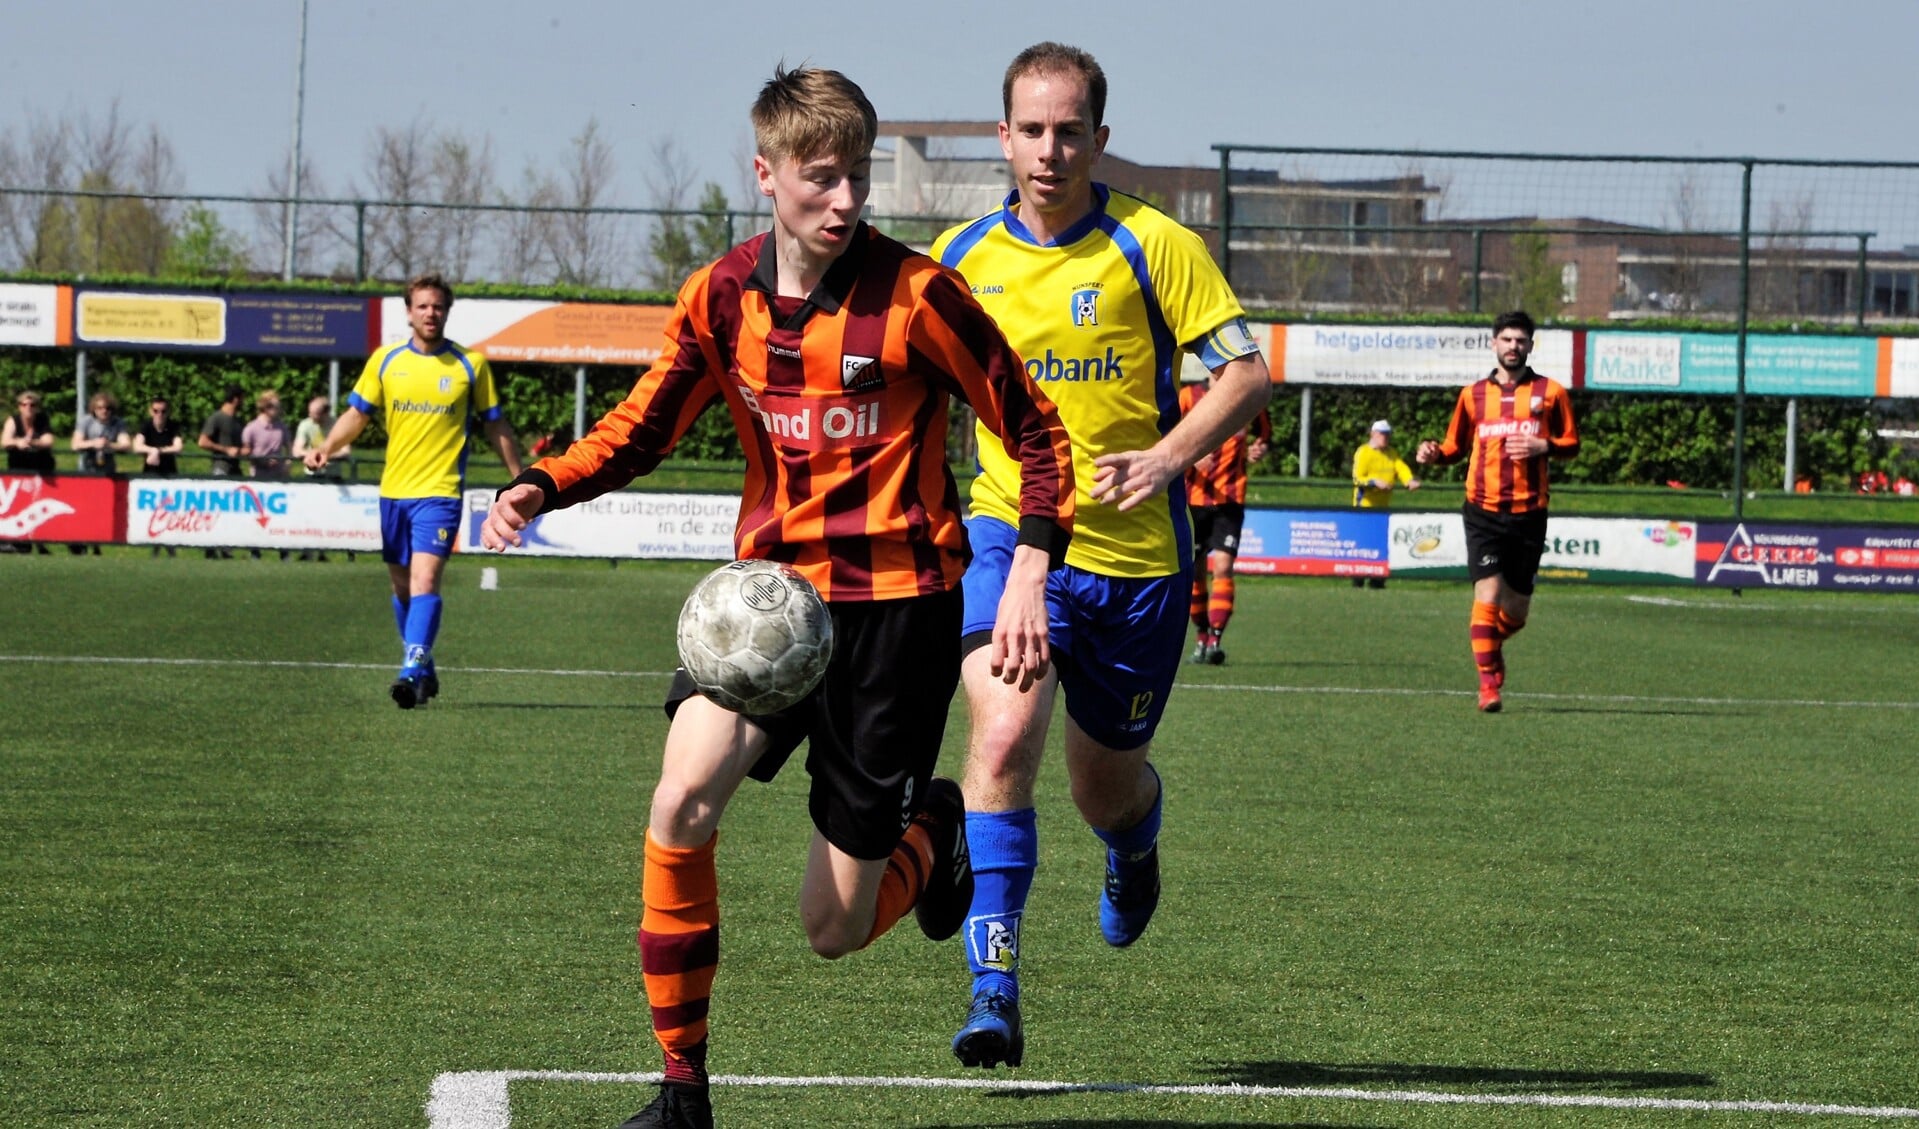 Actiefoto van de wedstrijd FC Zutphen zat.1 - Nunspeet 1. Foto: Hans ten Brinke